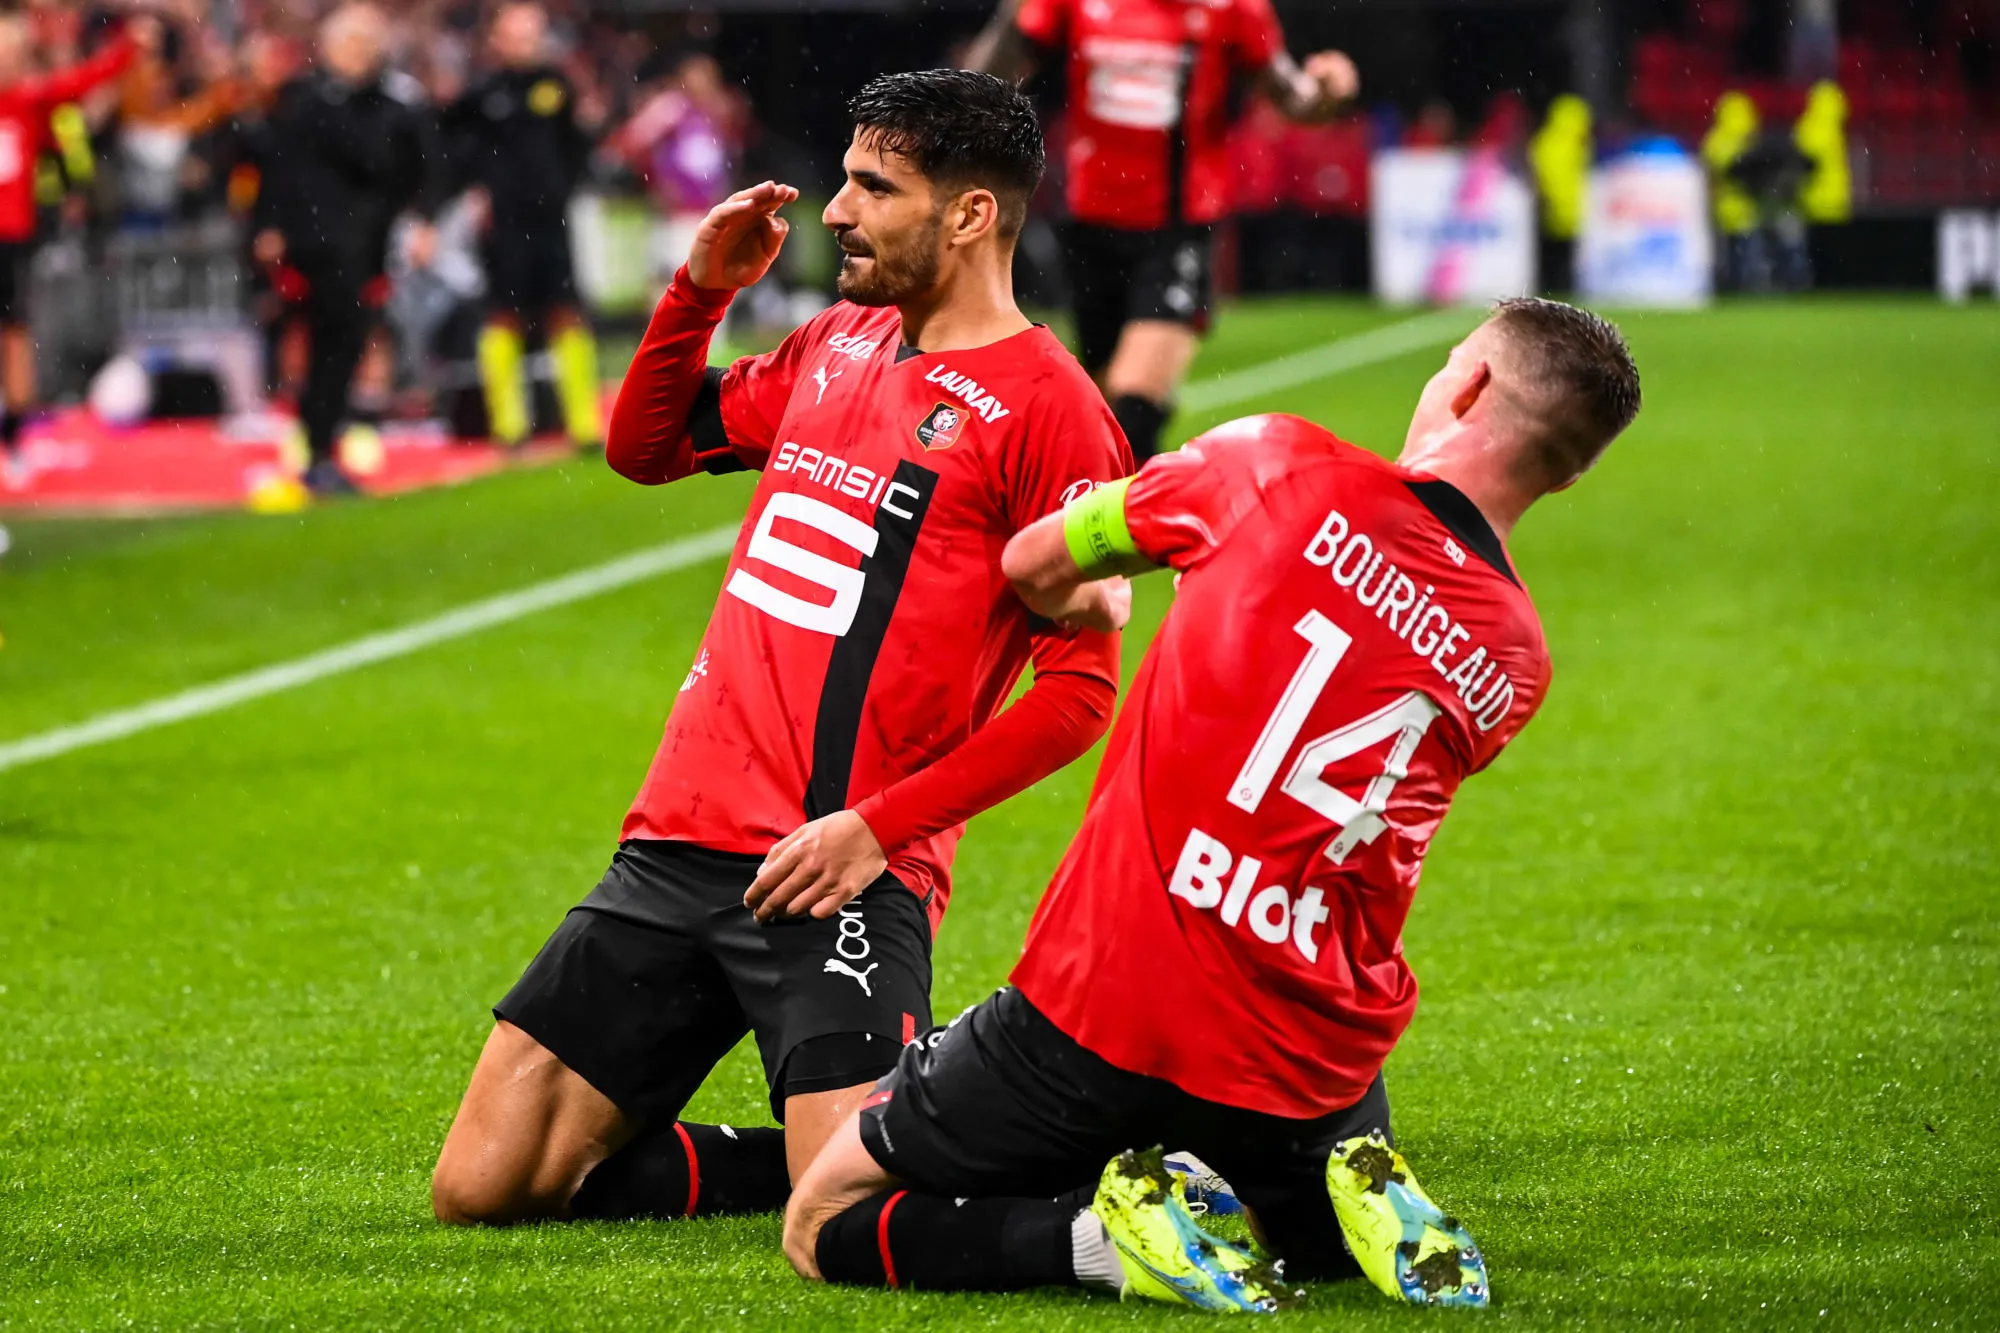 Pronostic Rennes Toulouse : Analyse, cotes et prono du match de Ligue 1